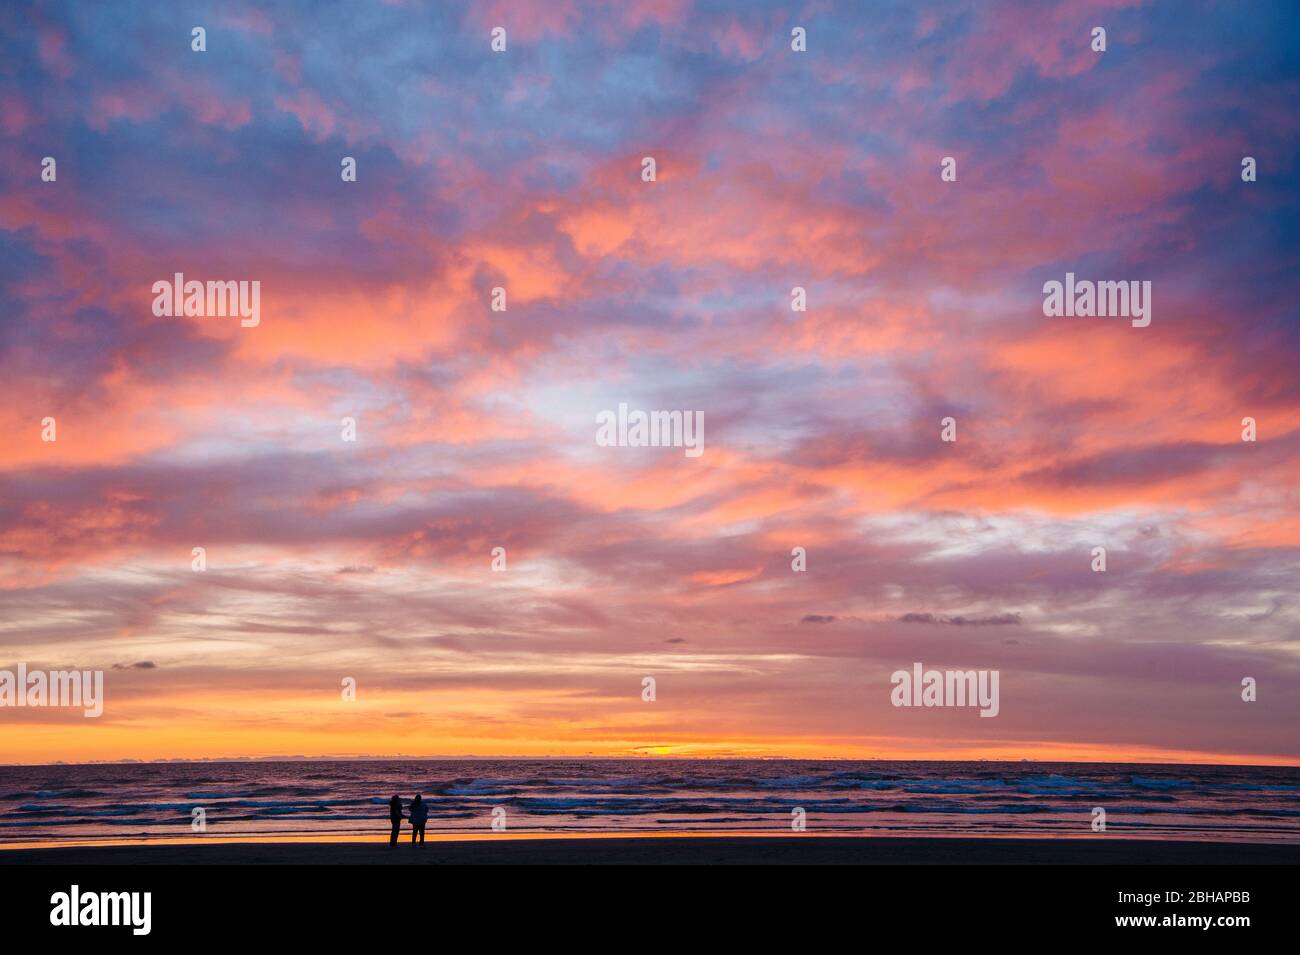 Silueta de dos personas en la playa contra el espectacular cielo al atardecer, Seaside, Oregon, Estados Unidos Foto de stock